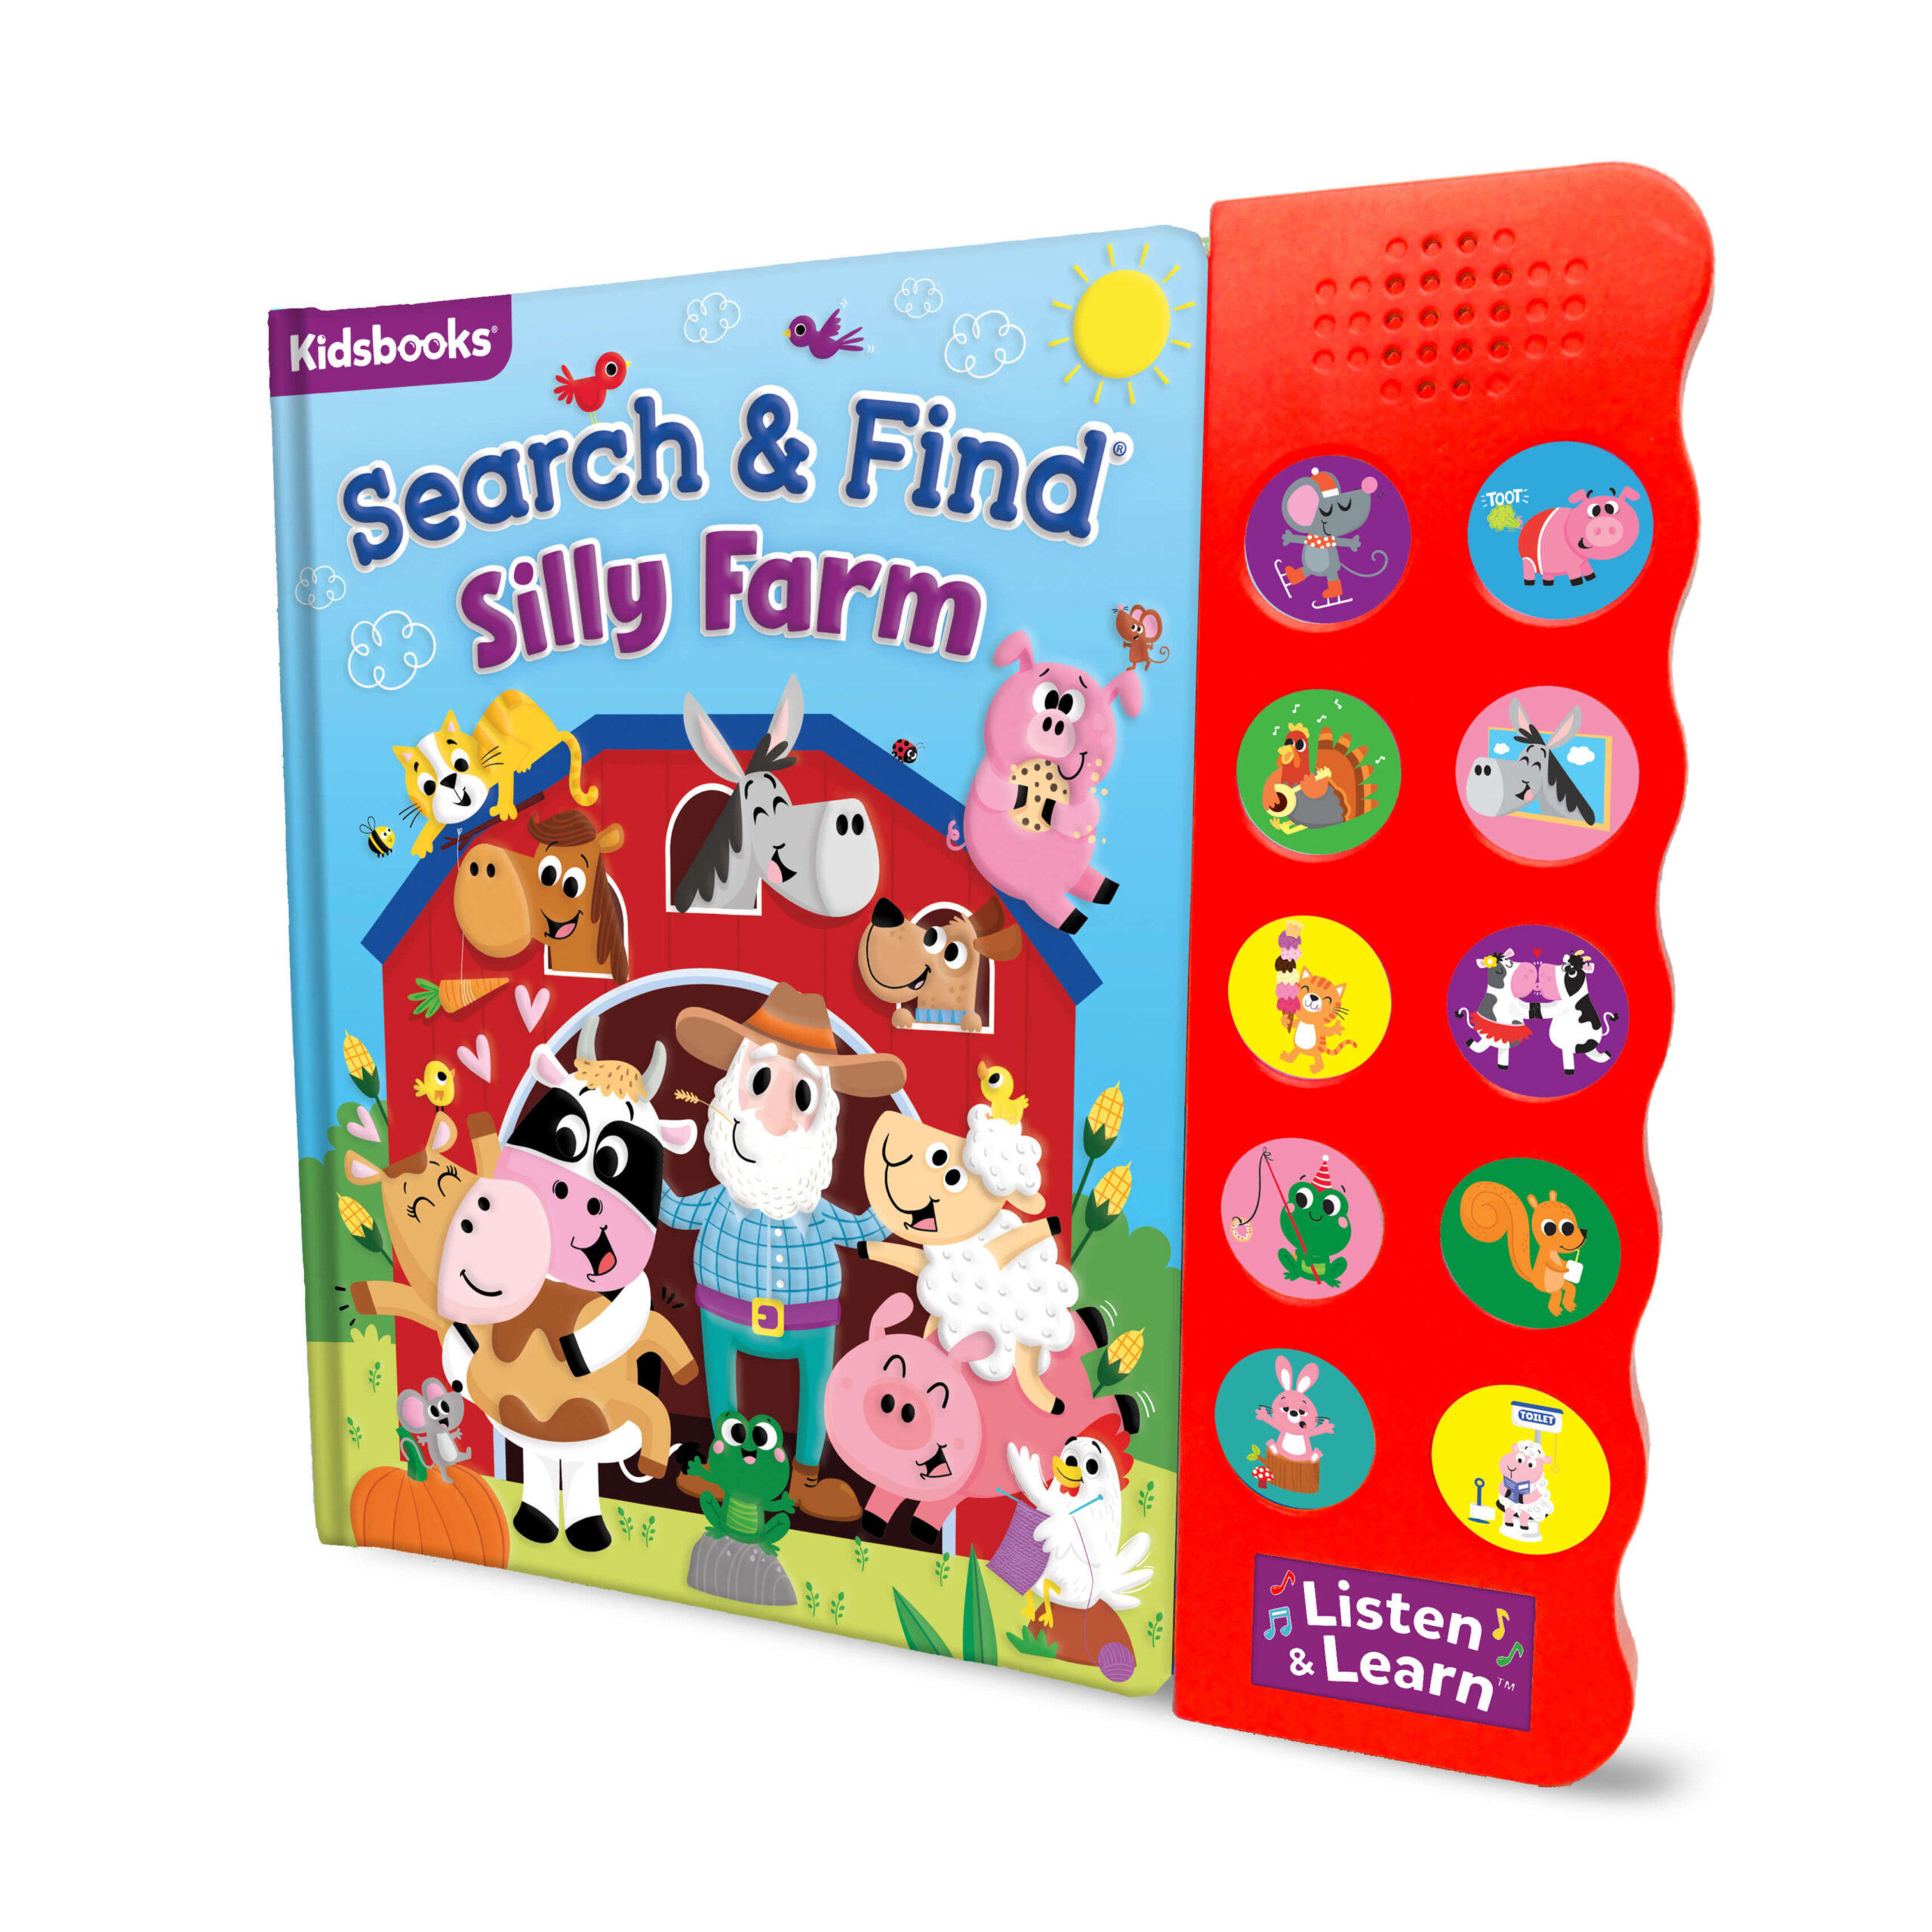 Search & Find: Silly Farm